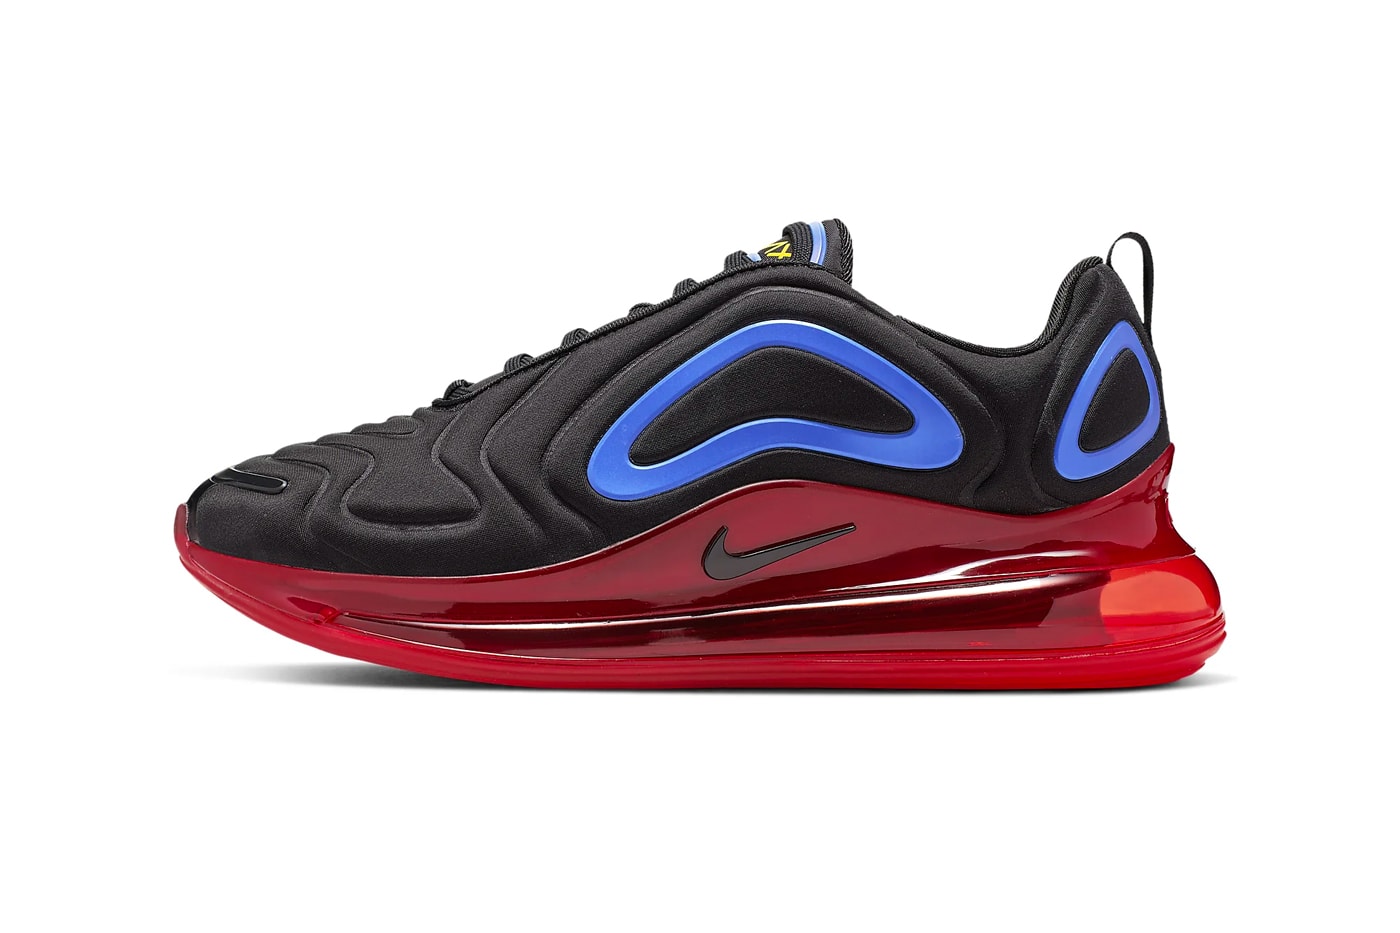 ナイキより原色を巧みに使用したエアマックス720の新色モデルが登場 Nike Air Max 720 Primary Colors Release Info black hyper royal challenge red university gold sneakers shoes 